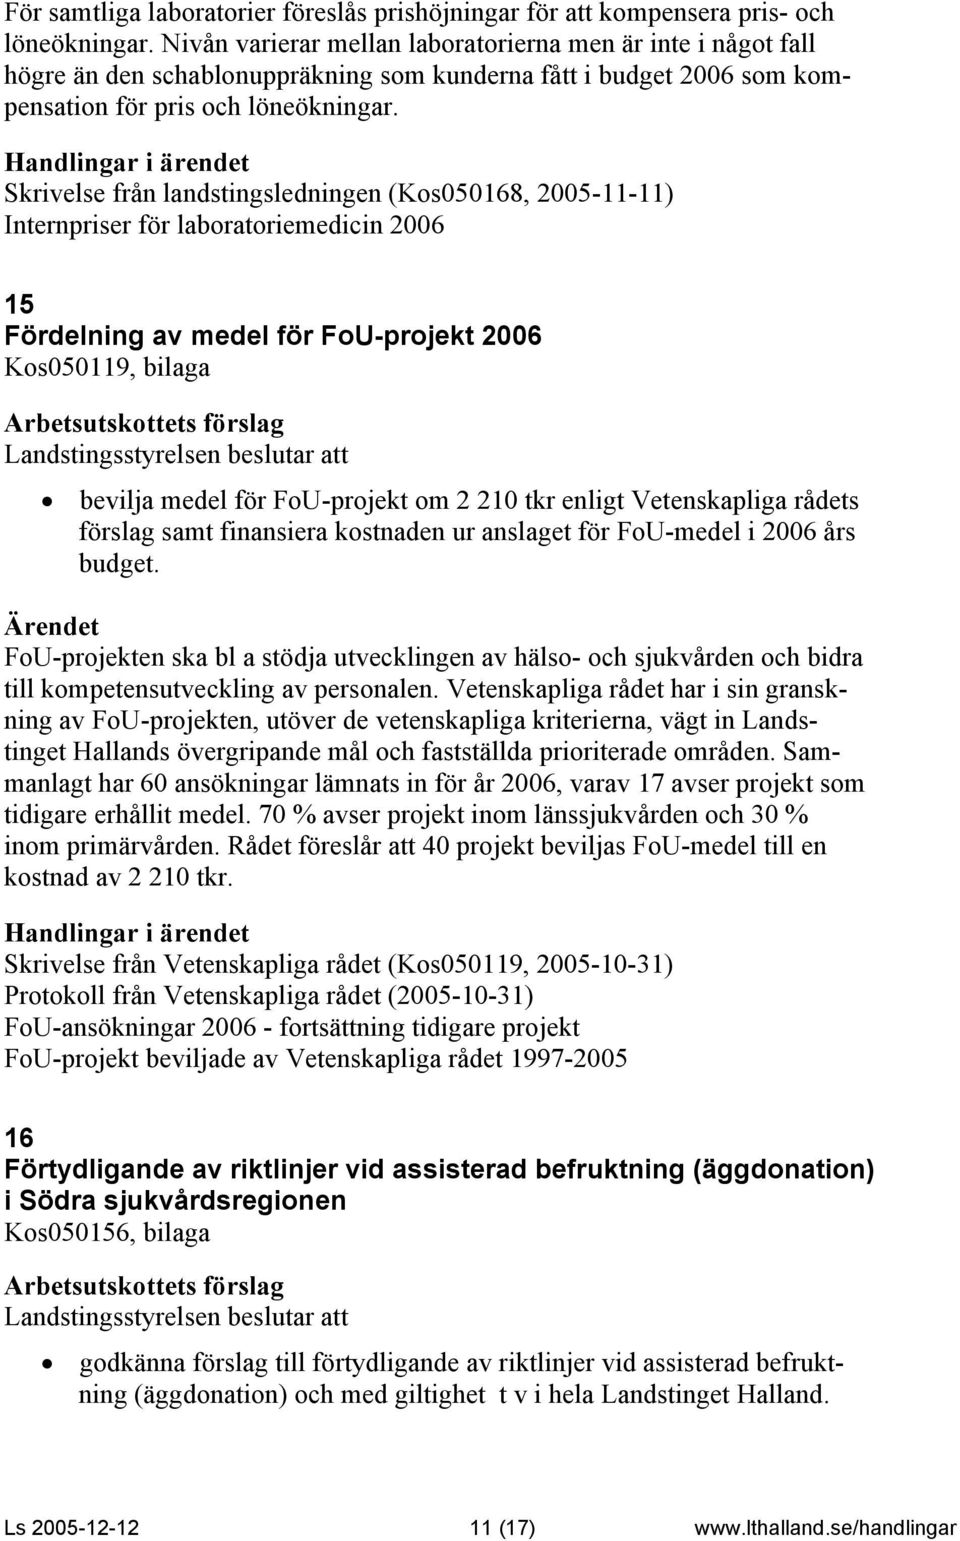 Skrivelse från landstingsledningen (Kos050168, 2005-11-11) Internpriser för laboratoriemedicin 2006 15 Fördelning av medel för FoU-projekt 2006 Kos050119, bilaga bevilja medel för FoU-projekt om 2